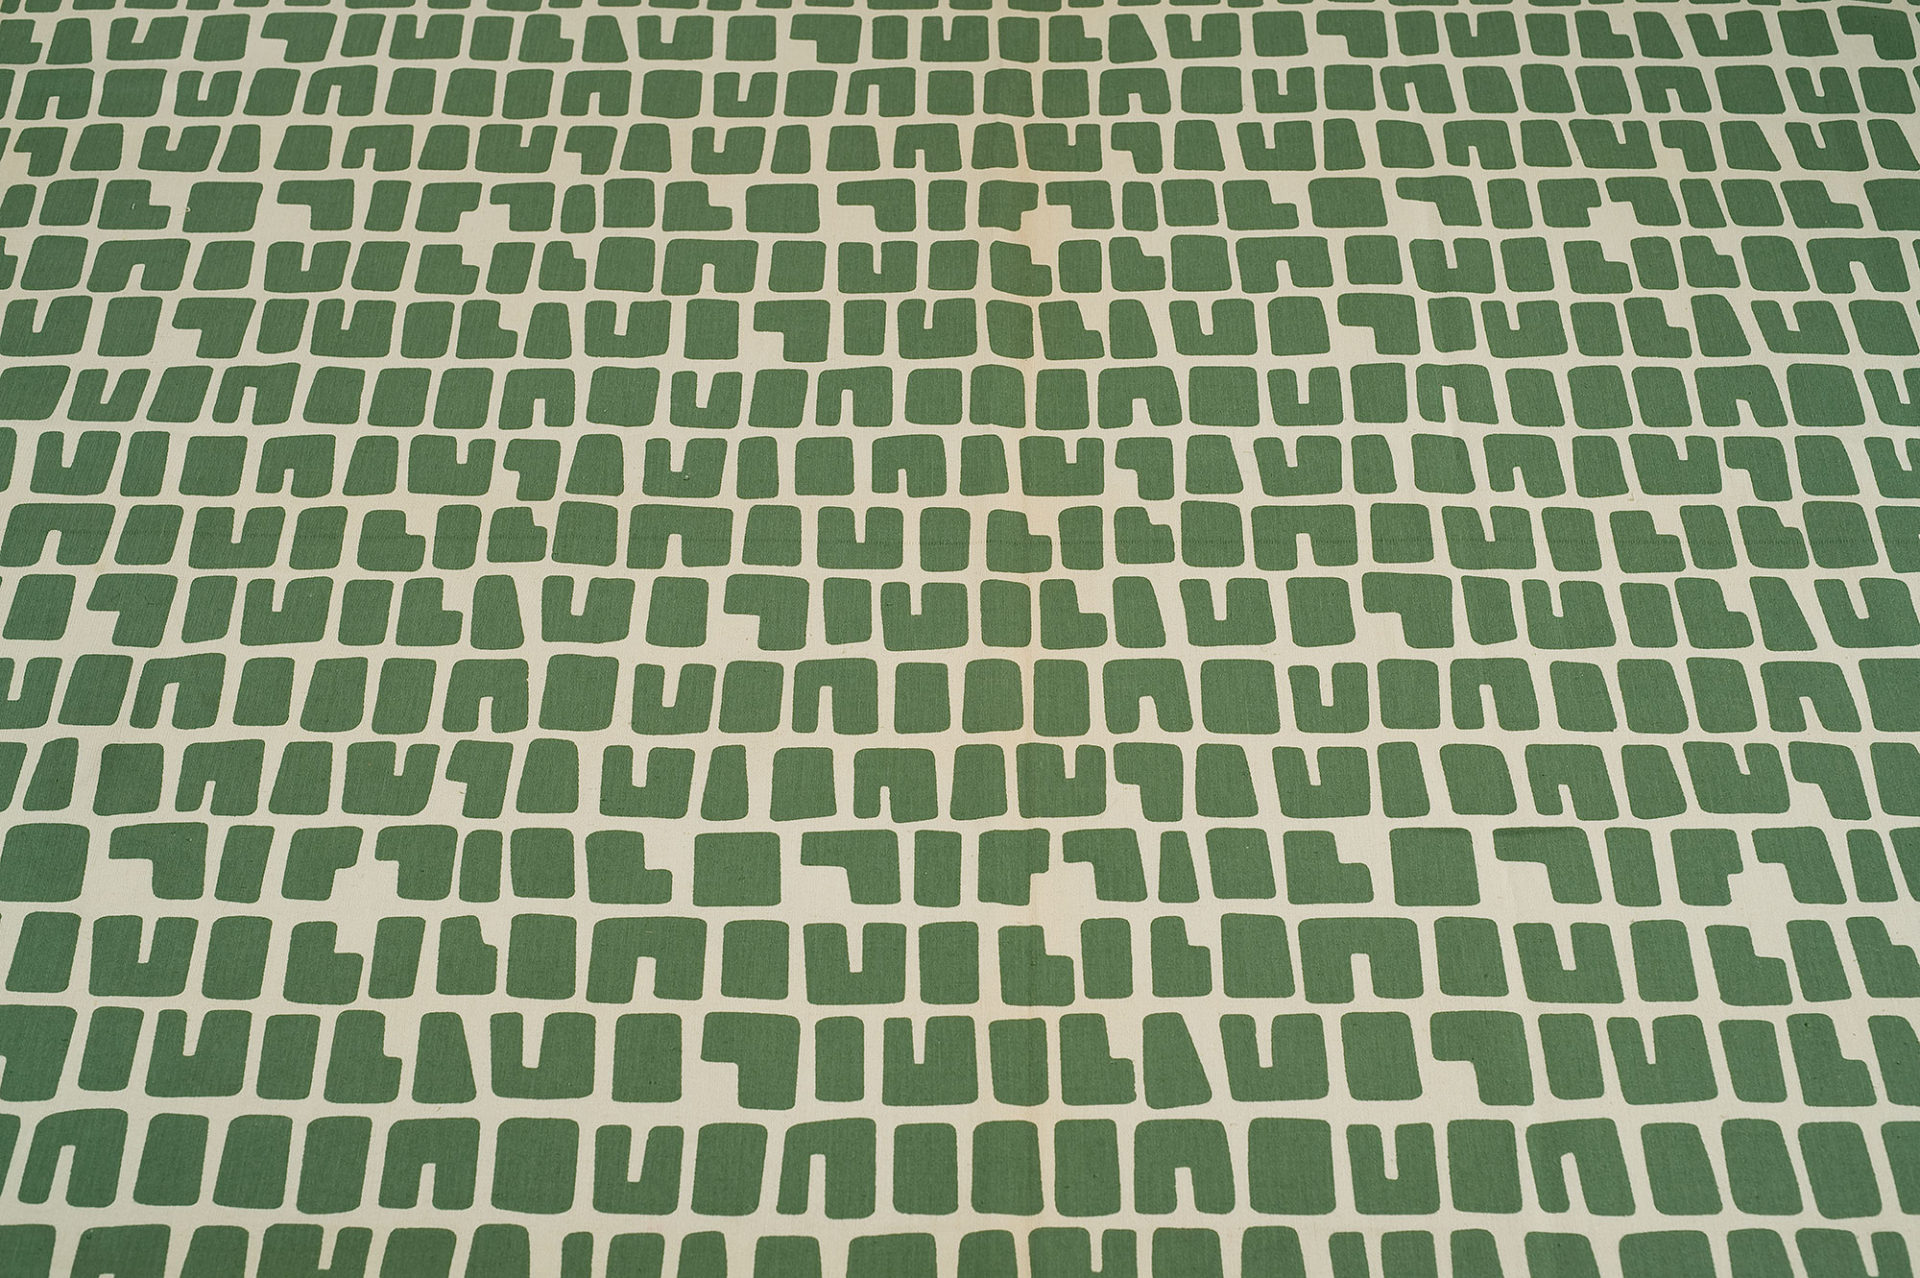 Étoffe blanche avec plusieurs rangées de formes comparables à de grosses lettres vertes.